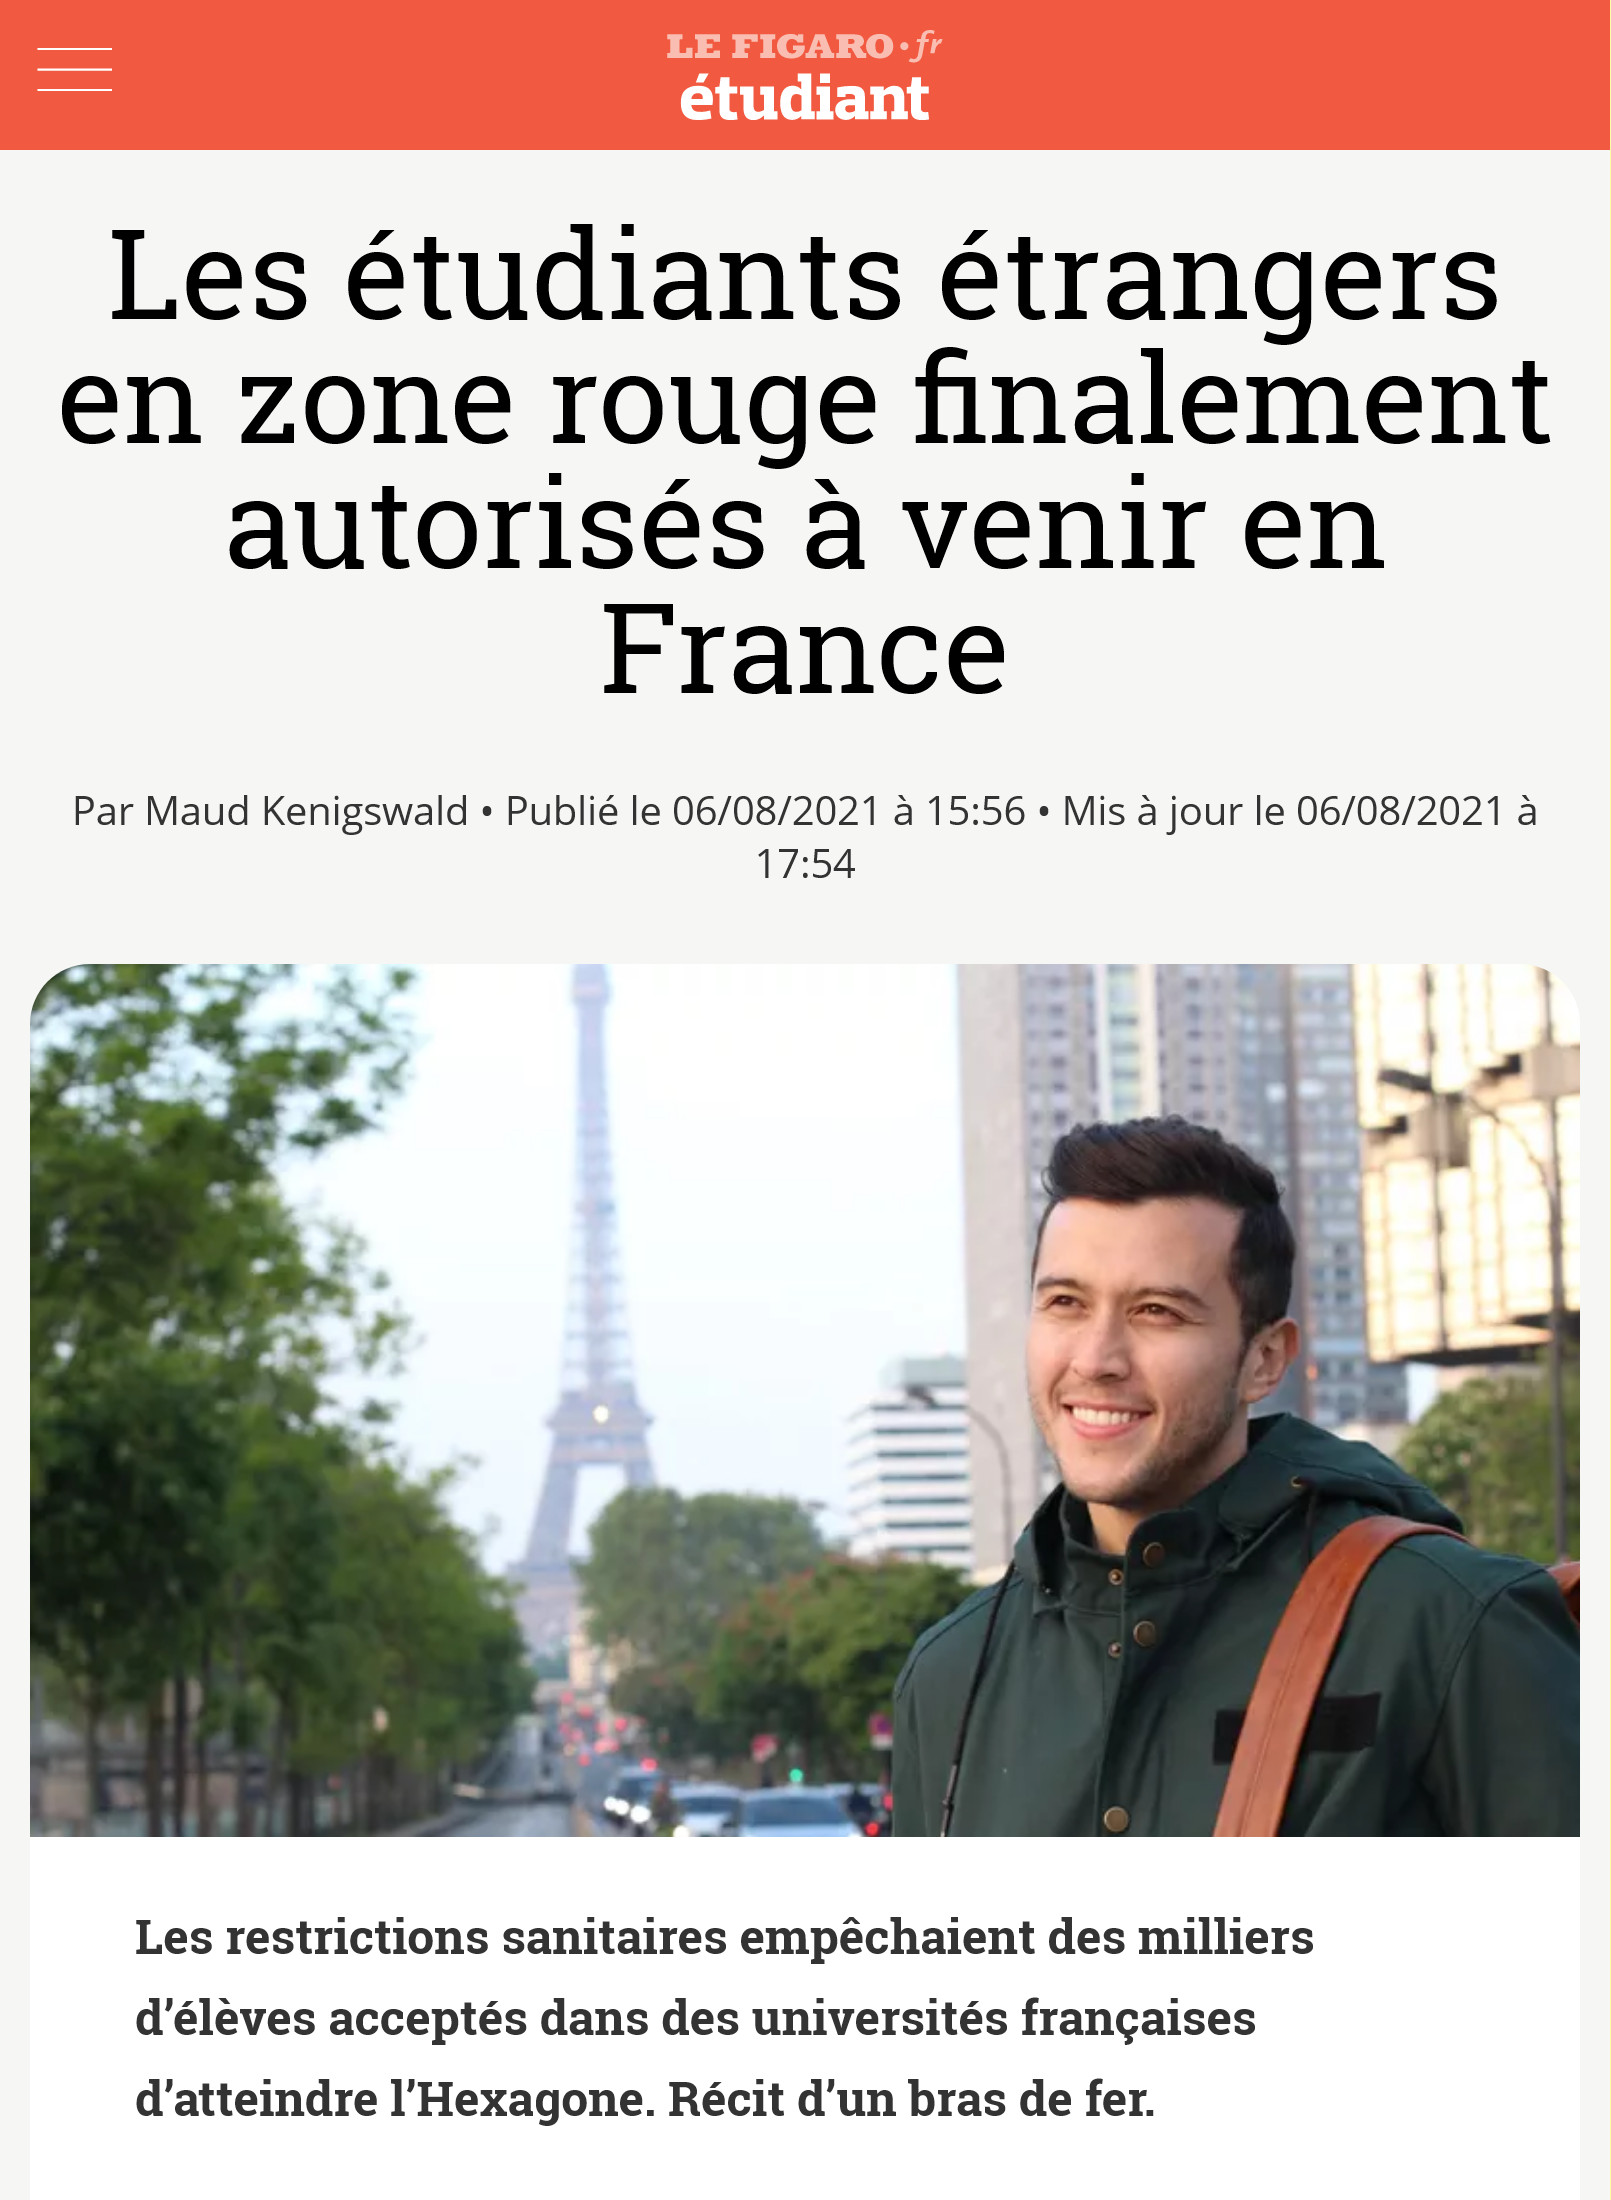 Статьи французских газет о студентах из «красных зон». Источник: etudiant.lefigaro.fr